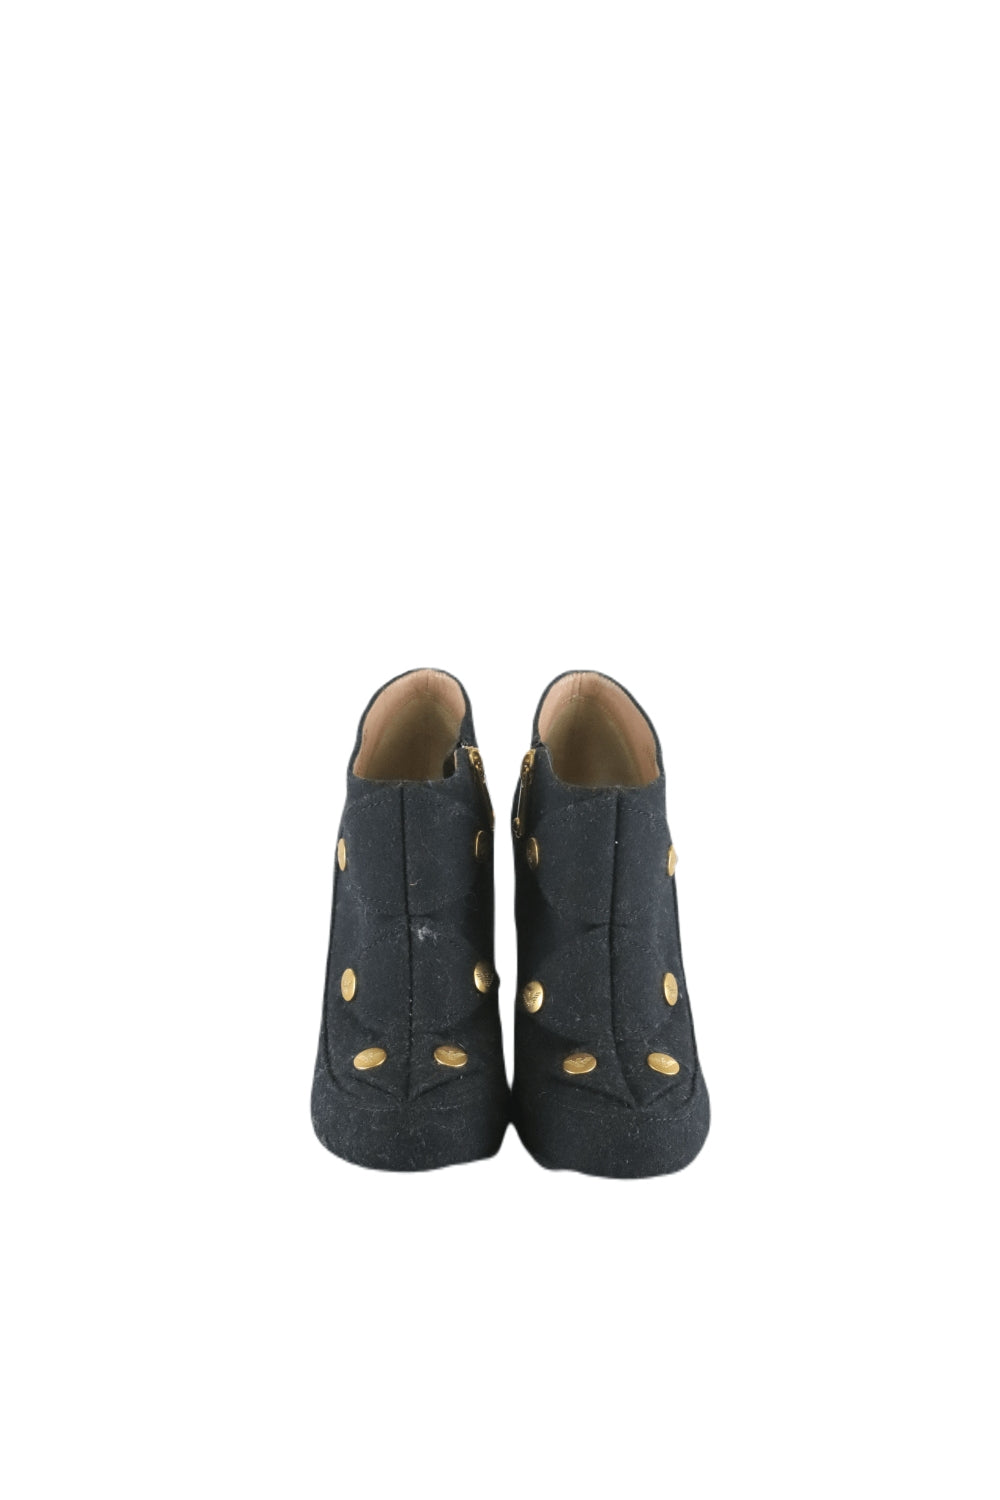 Emporio Armani Black Heel Boots 37